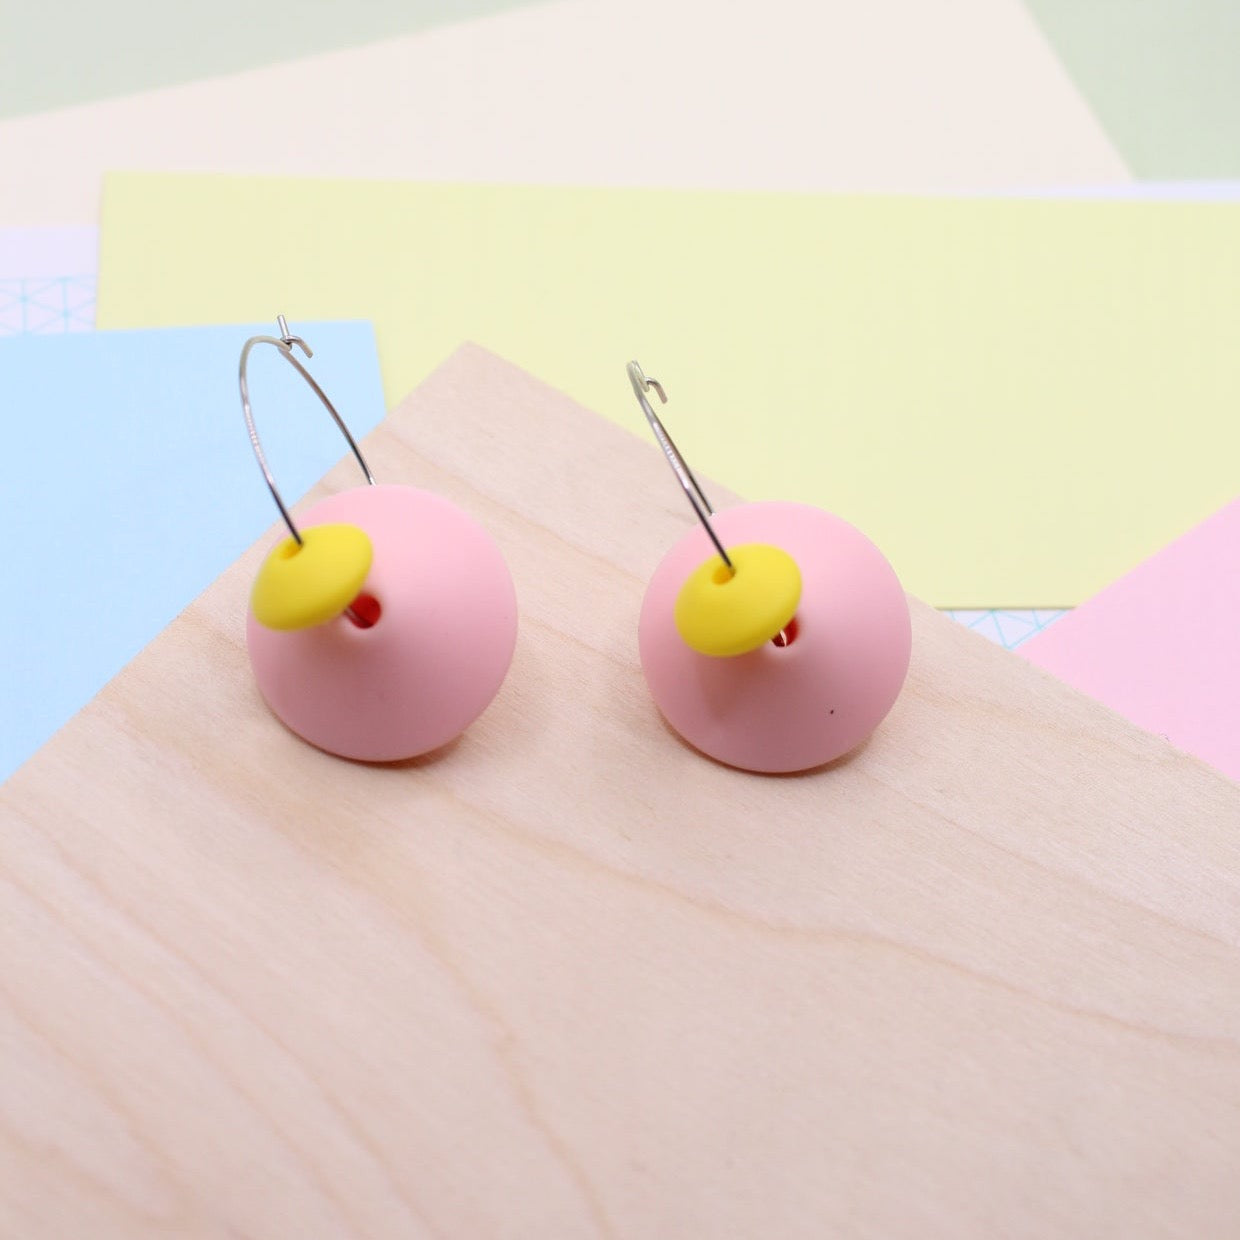 Statement Silicone Hoop Dangle Earrings - Rose Pink, 30mm Hoops.